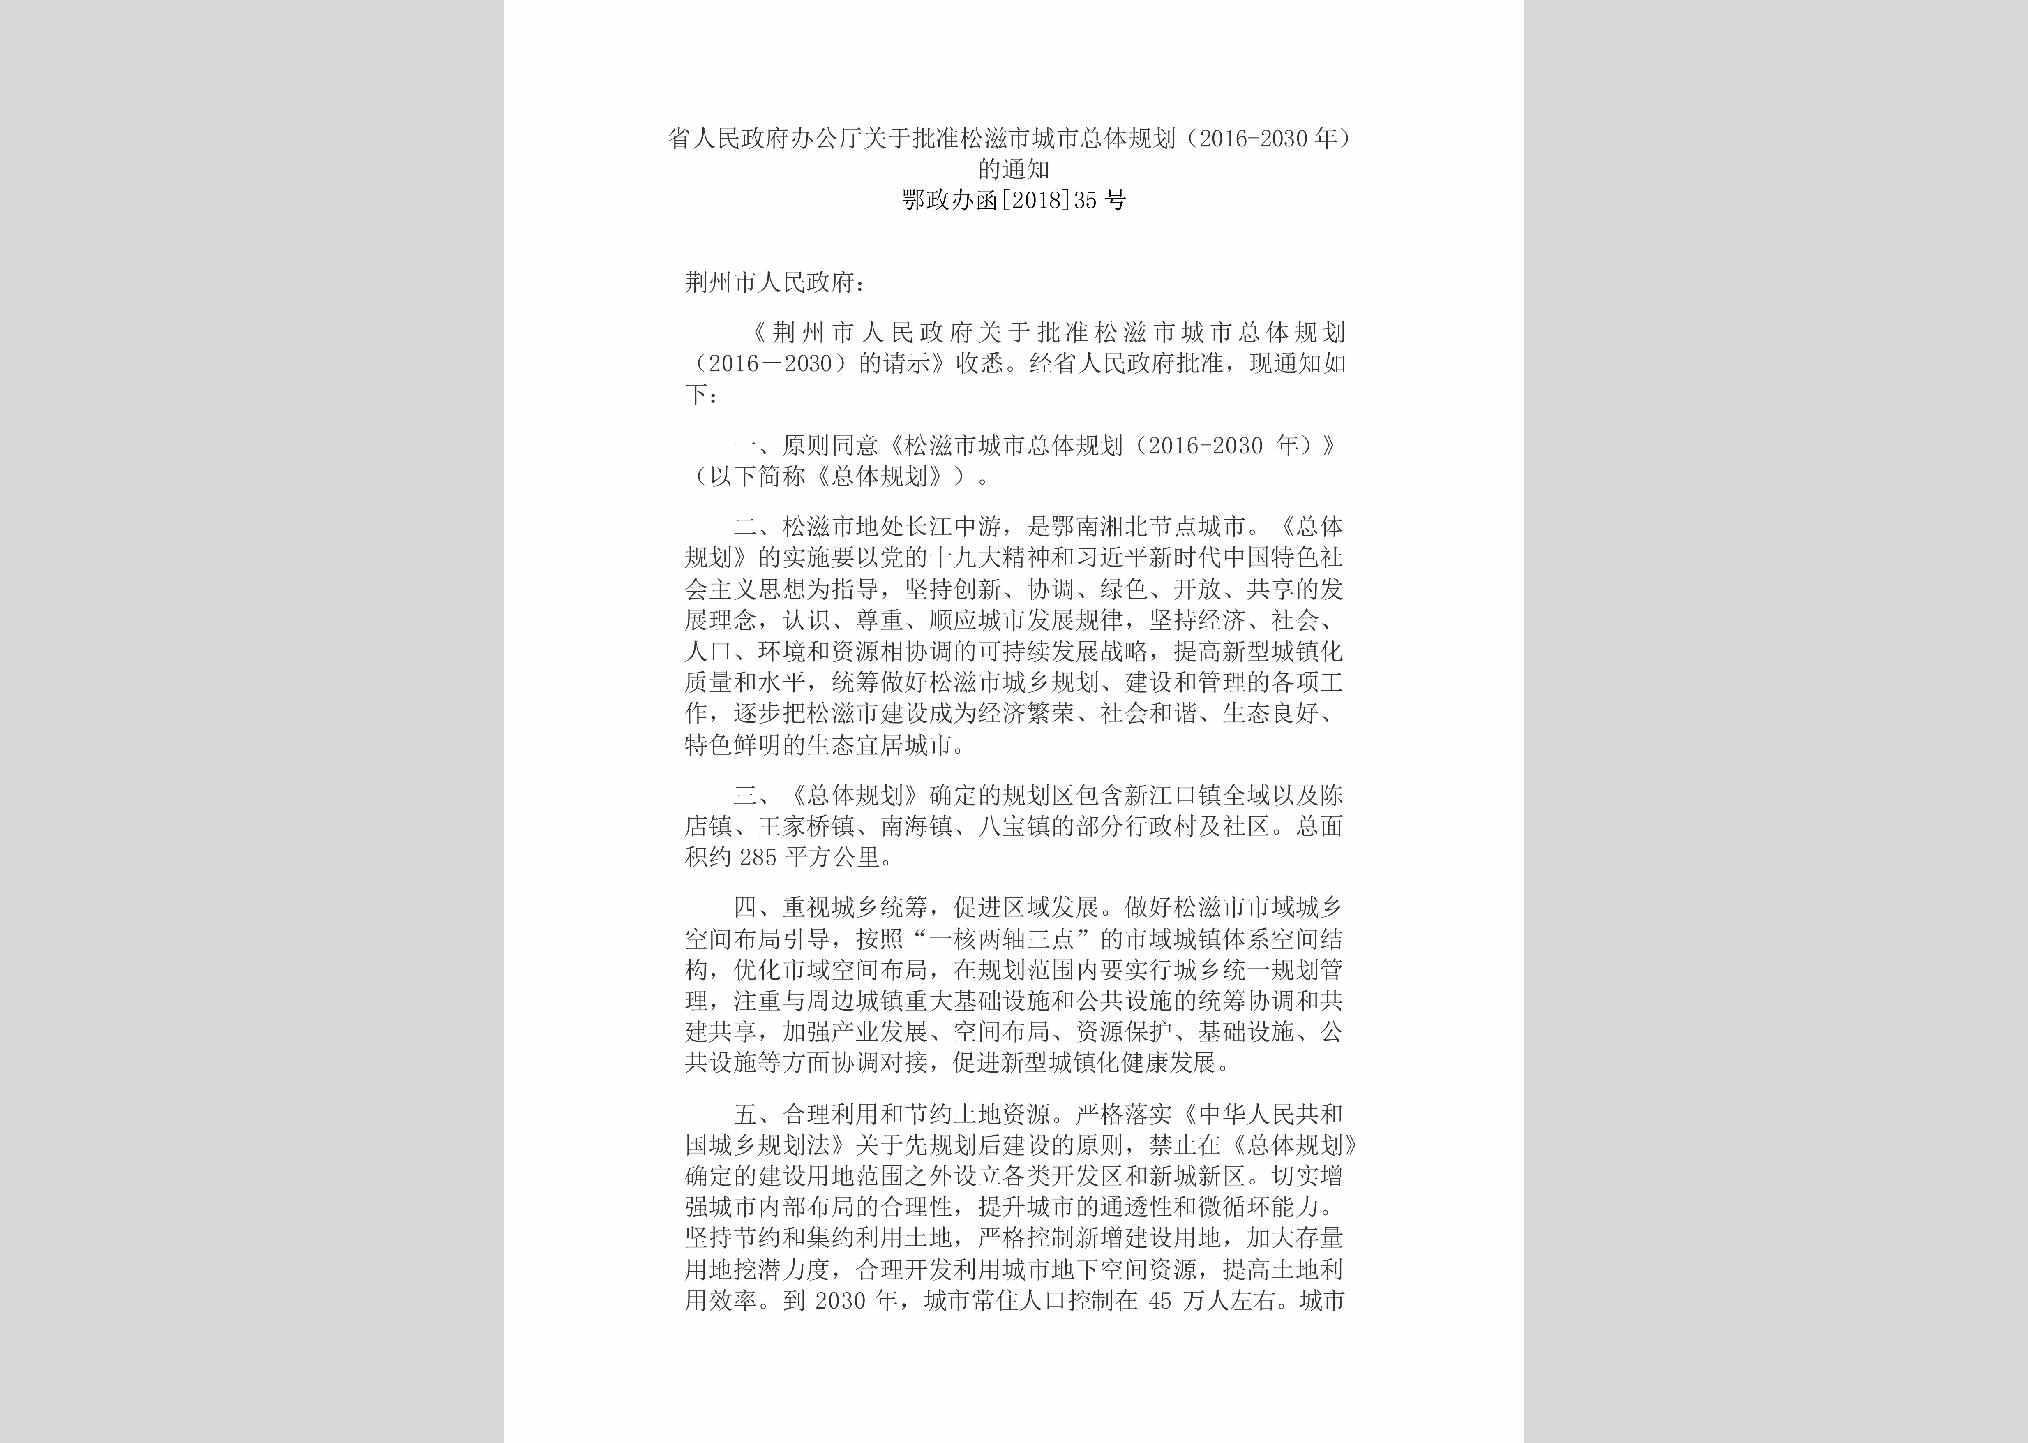 鄂政办函[2018]35号：省人民政府办公厅关于批准松滋市城市总体规划（2016-2030年）的通知